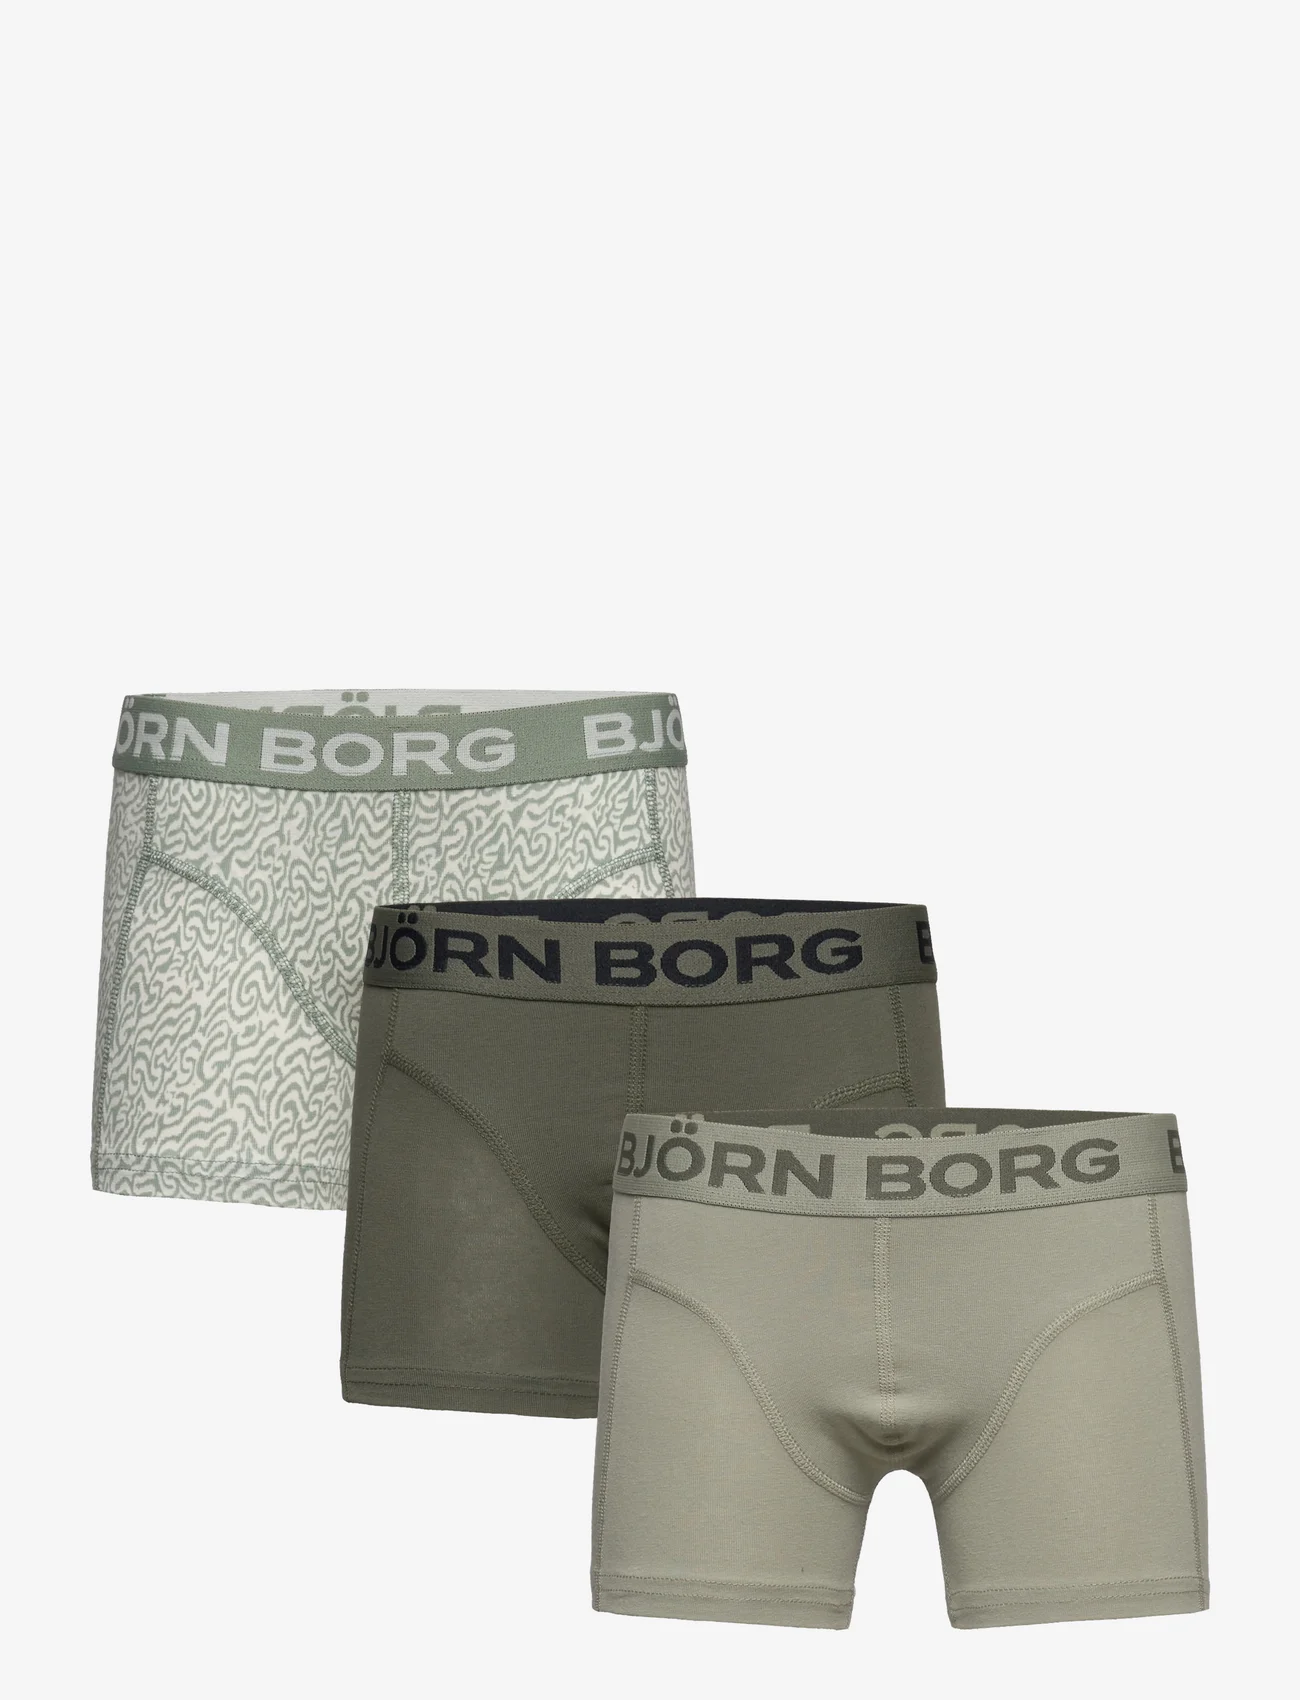 Björn Borg - CORE BOXER 3p - underbukser - multipack 4 - 0